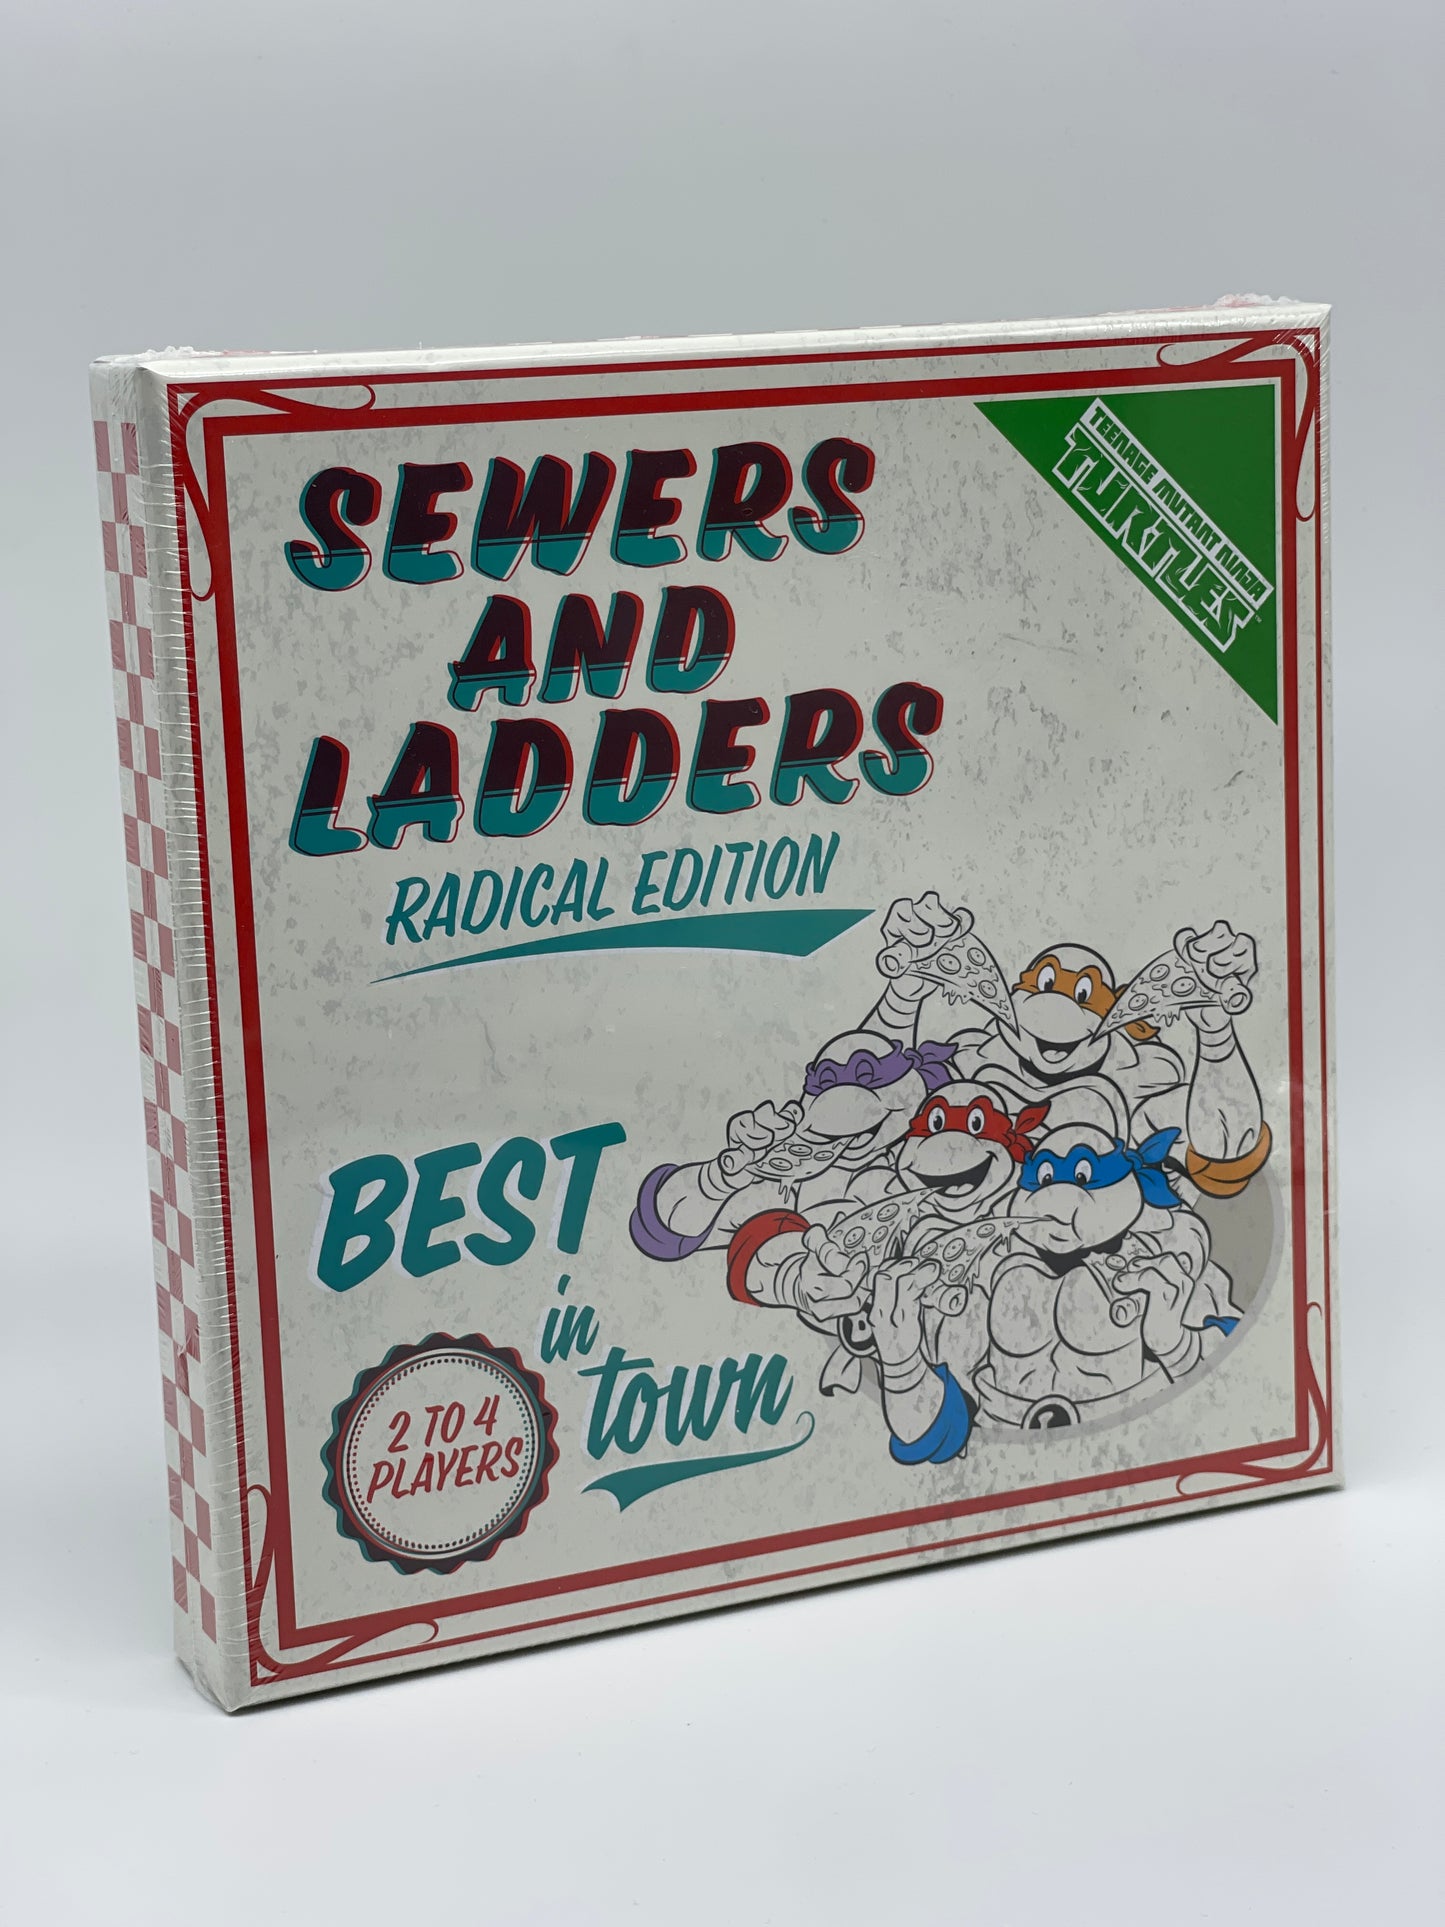 Teenage Mutant Ninja Turtles "Sewers and Ladders" Radical Edition Brettspiel US Version